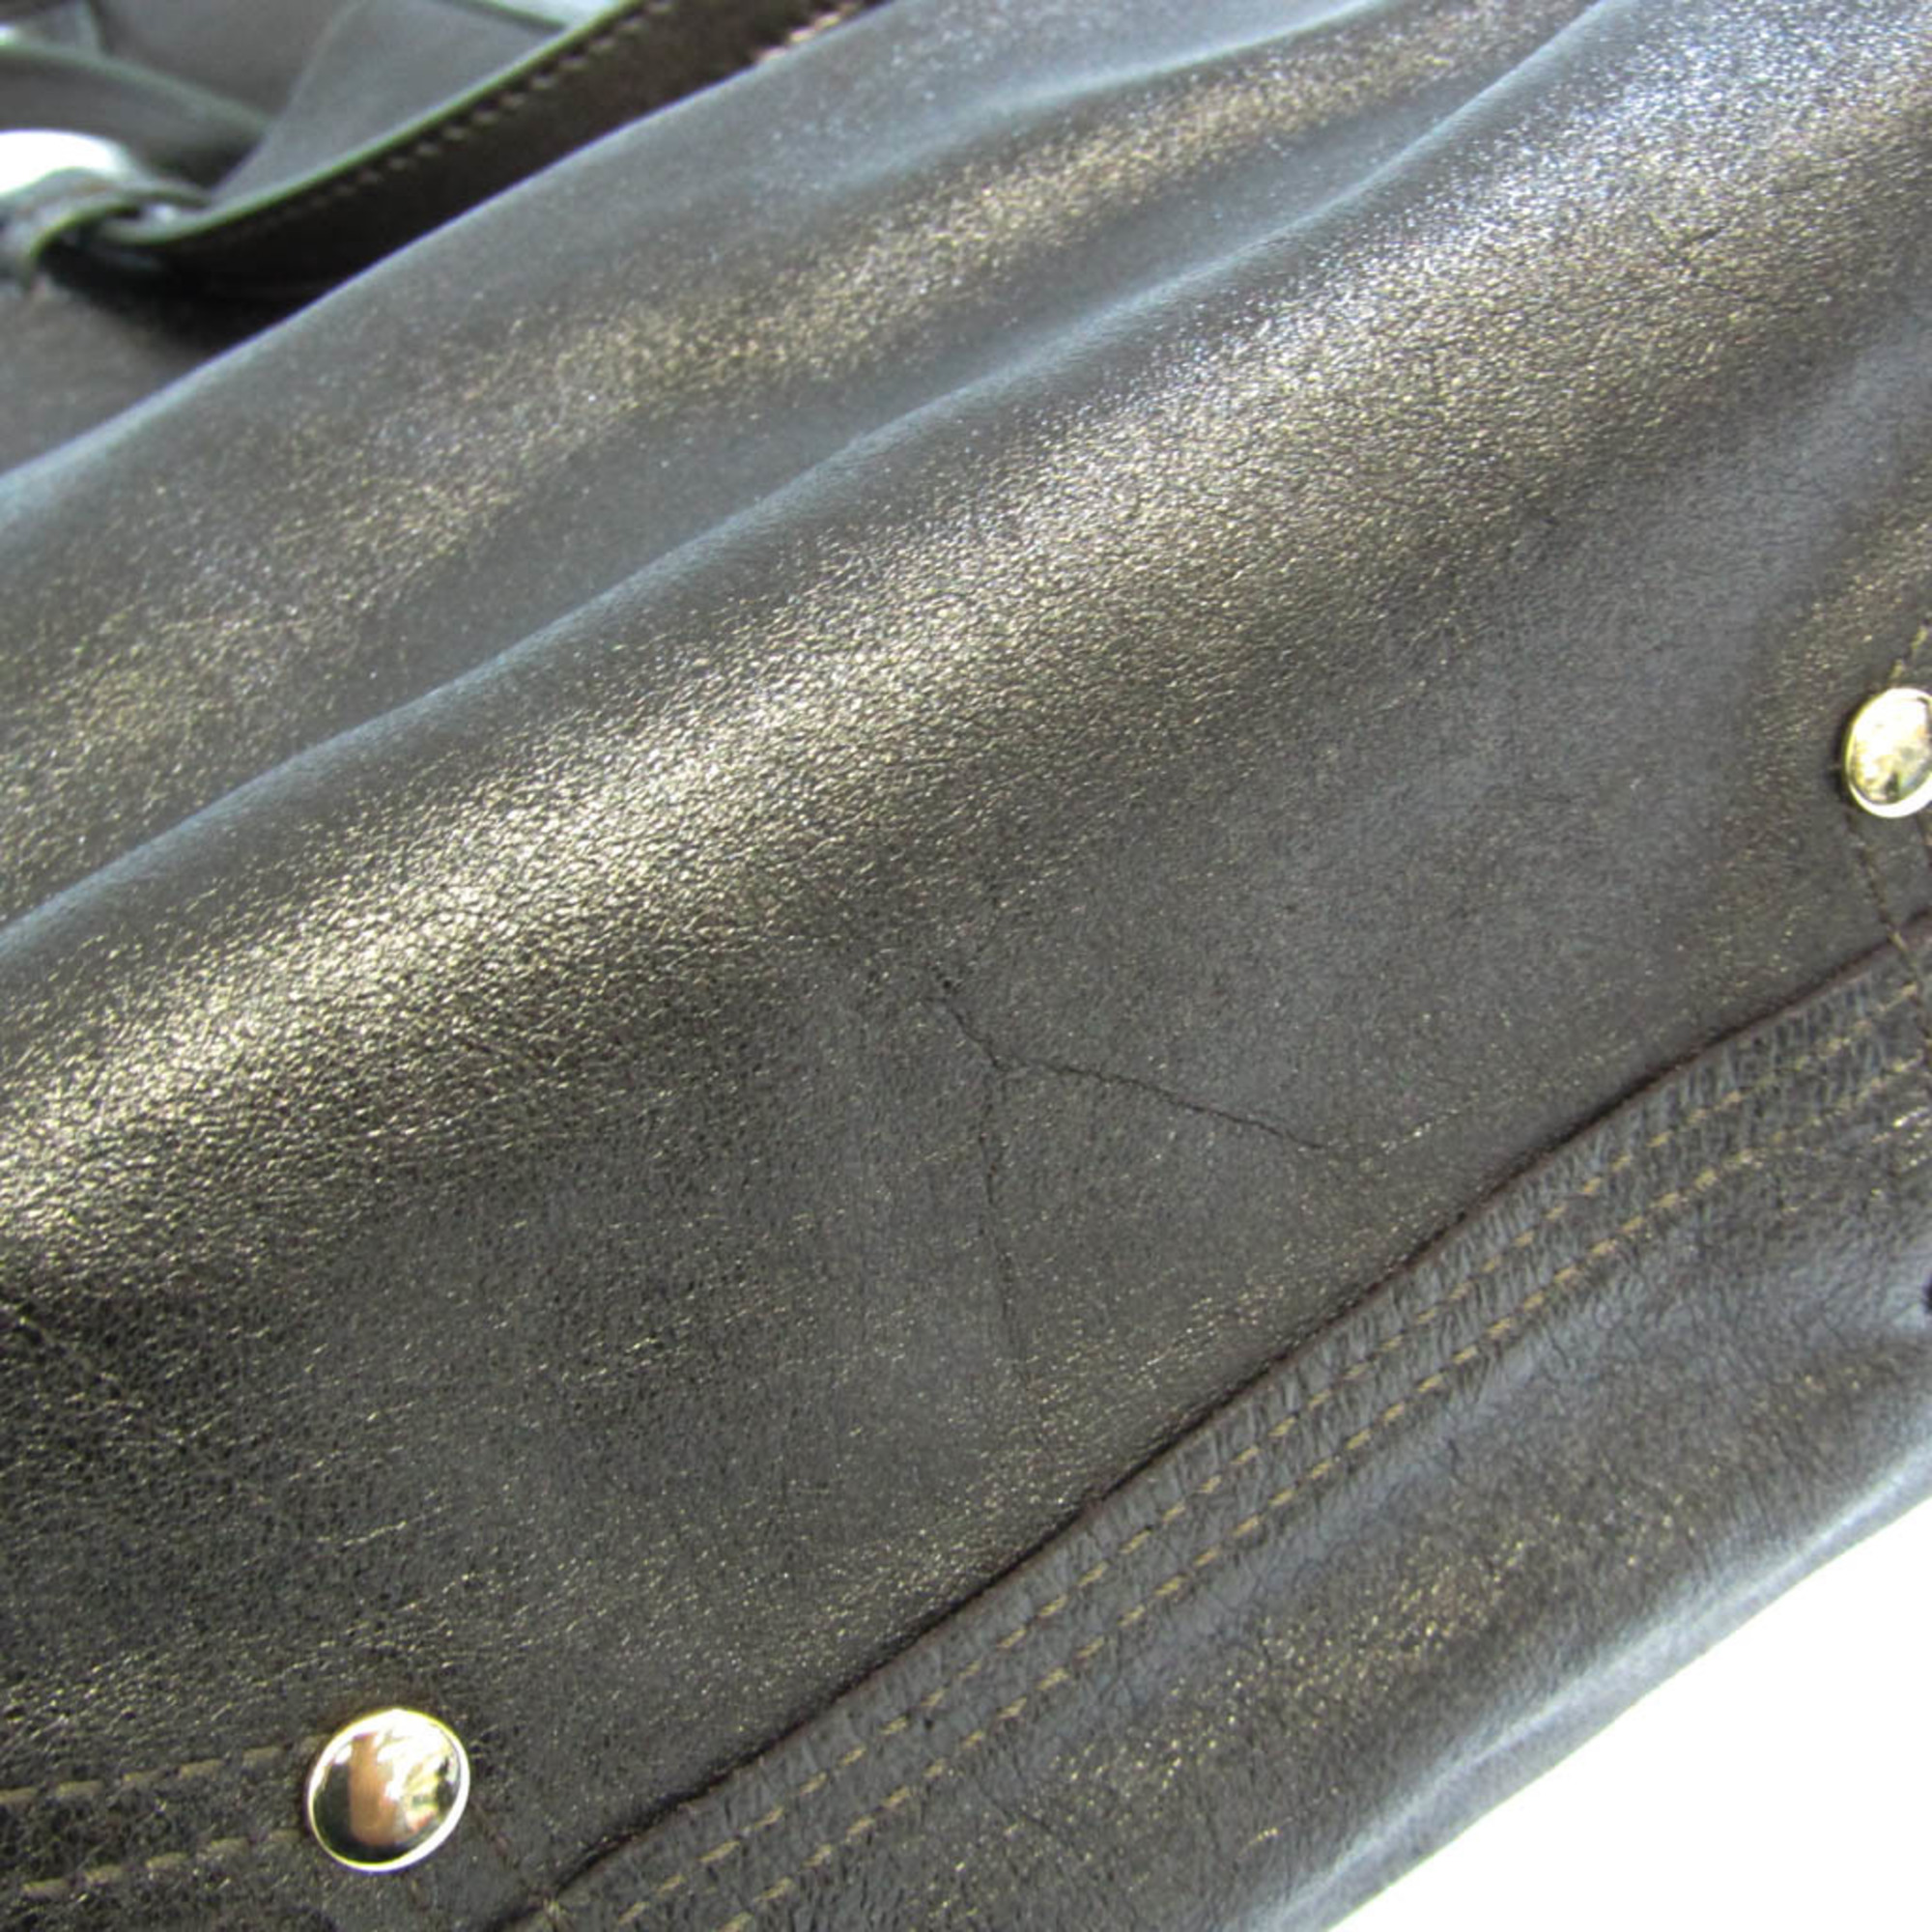 Tiffany Reversible Women's Leather Handbag,Tote Bag Brown